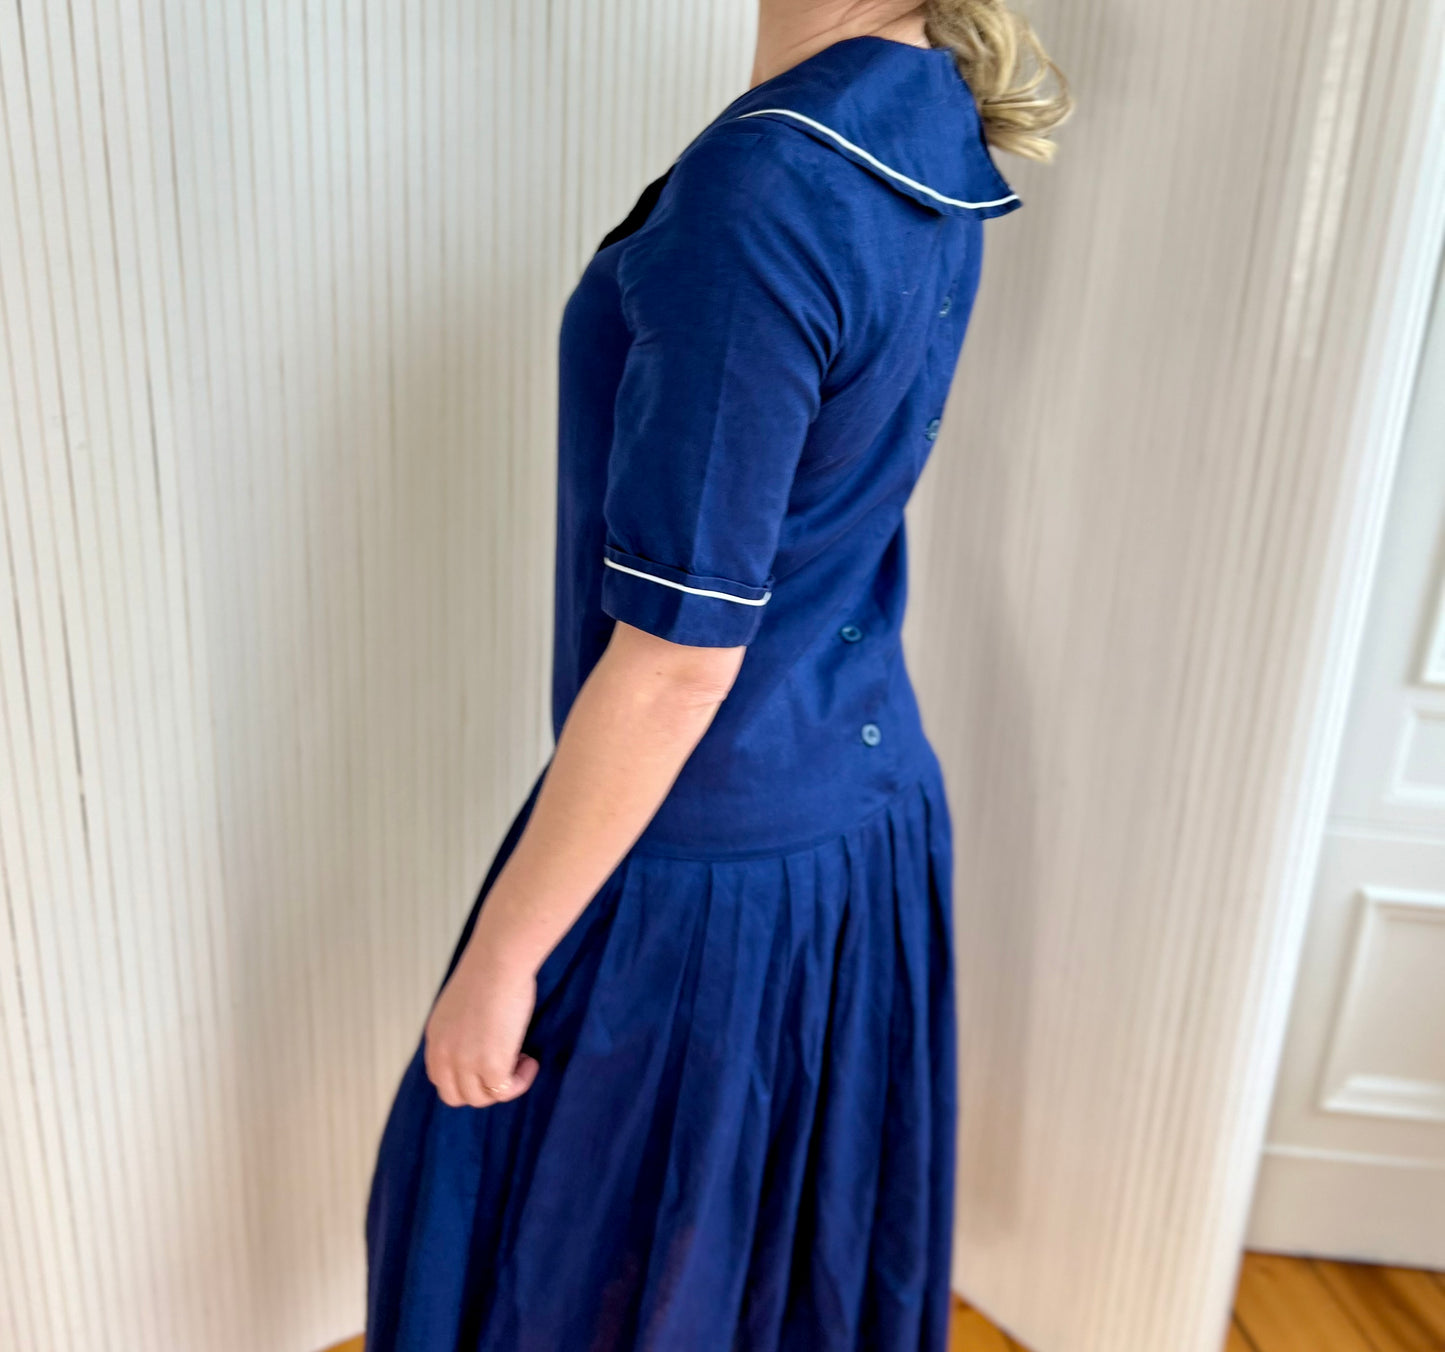 Laura Ashley 80s cotton sailor dress